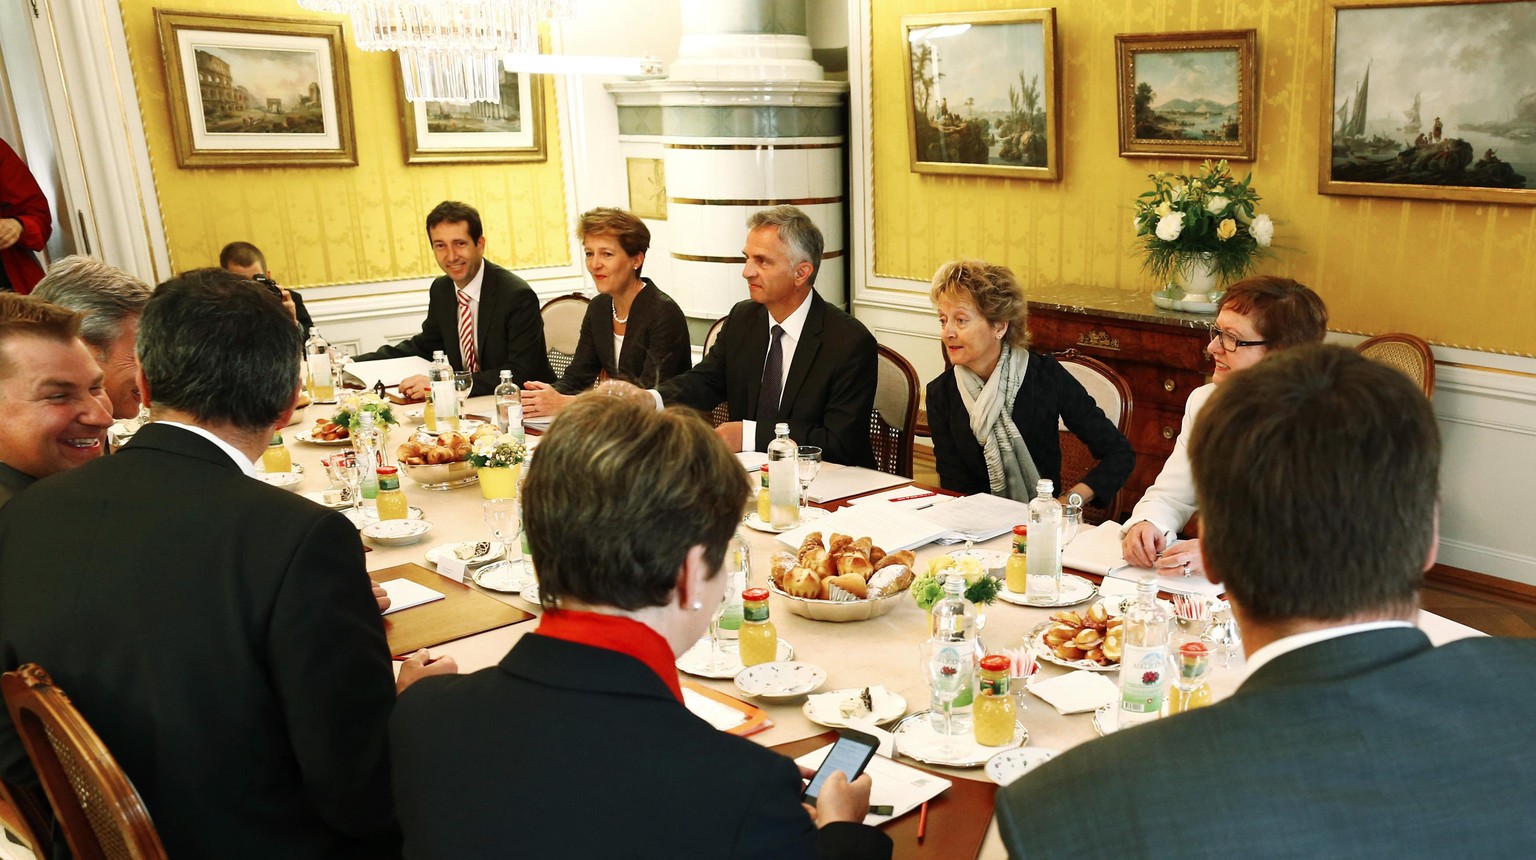 Die Von-Wattenwyl-Gespräche dienen zum Austausch zwischen Parteispitzen und dem Bundesrat.